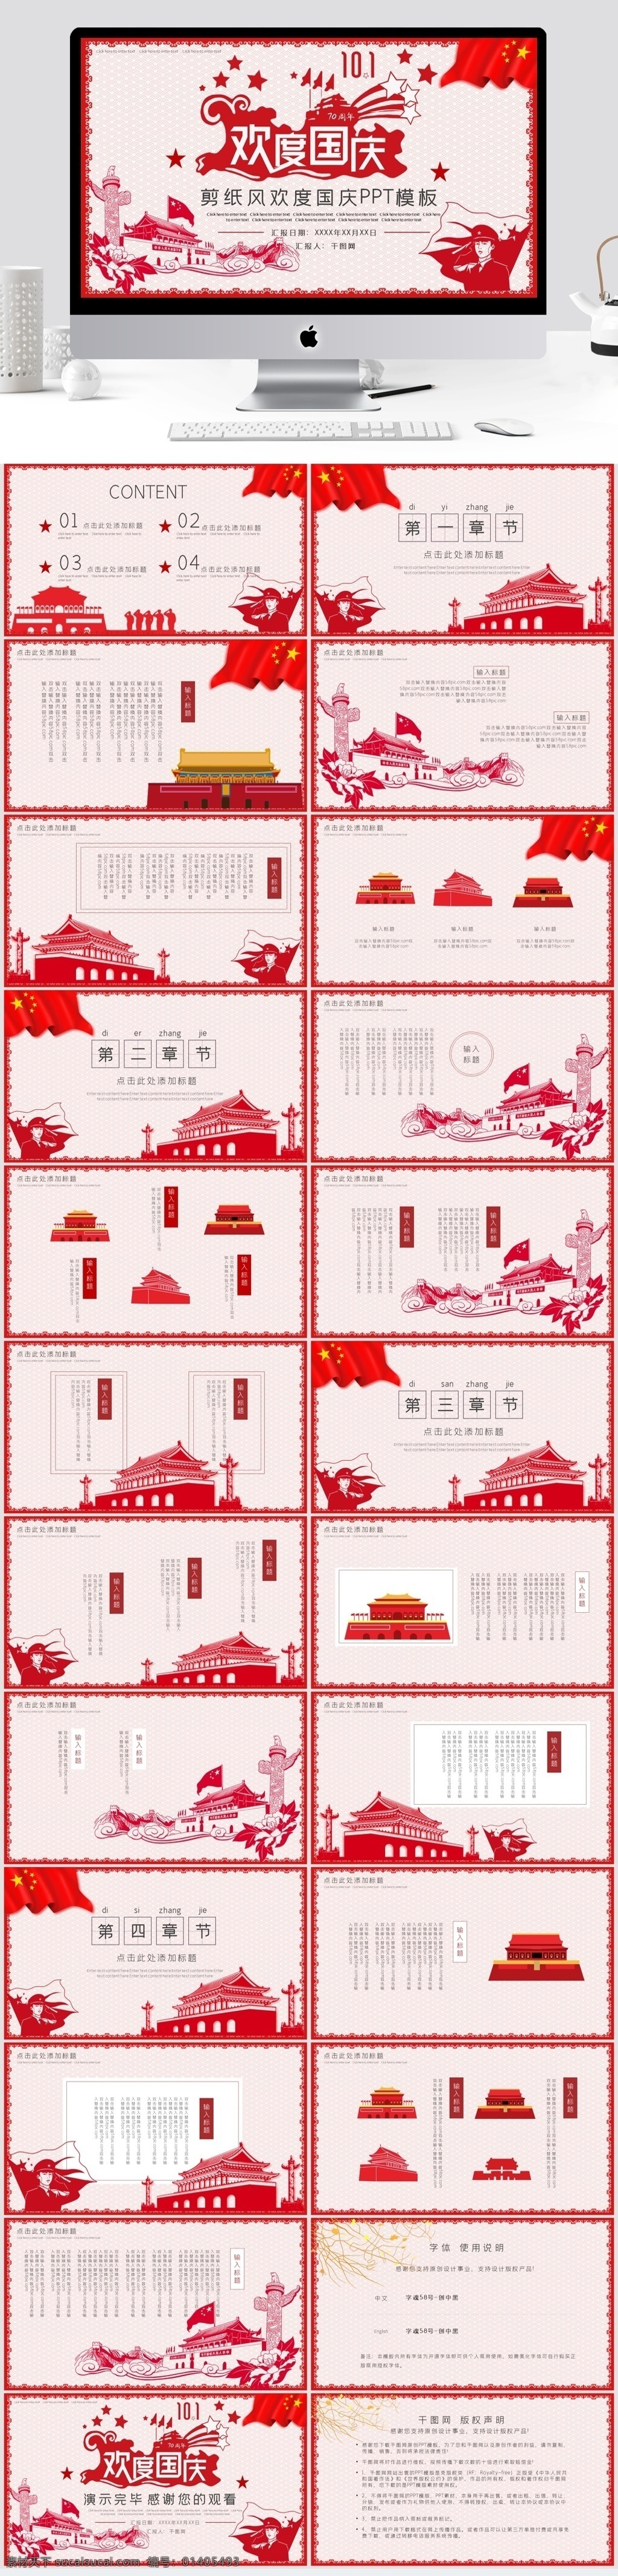 剪纸 风 欢度国庆 模板 红色 剪纸风 国庆 节日 庆典 中国 通用 节日庆典